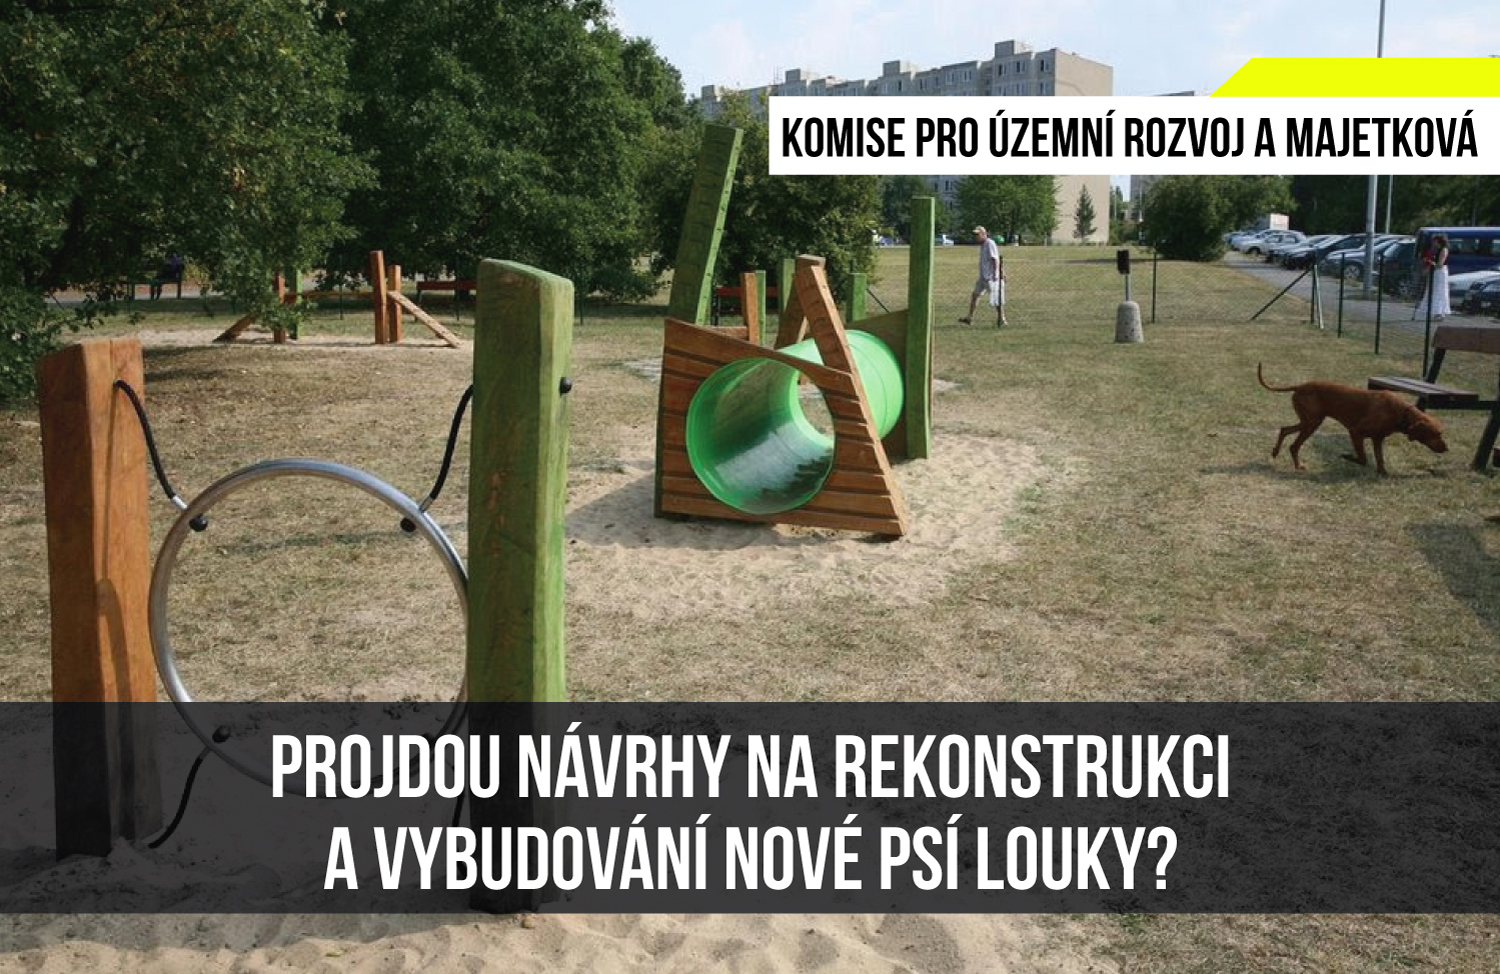 Read more about the article Komise pro územní rozvoj a majetková: Projdou návrhy na rekonstrukci a vybudování nové psí louky?